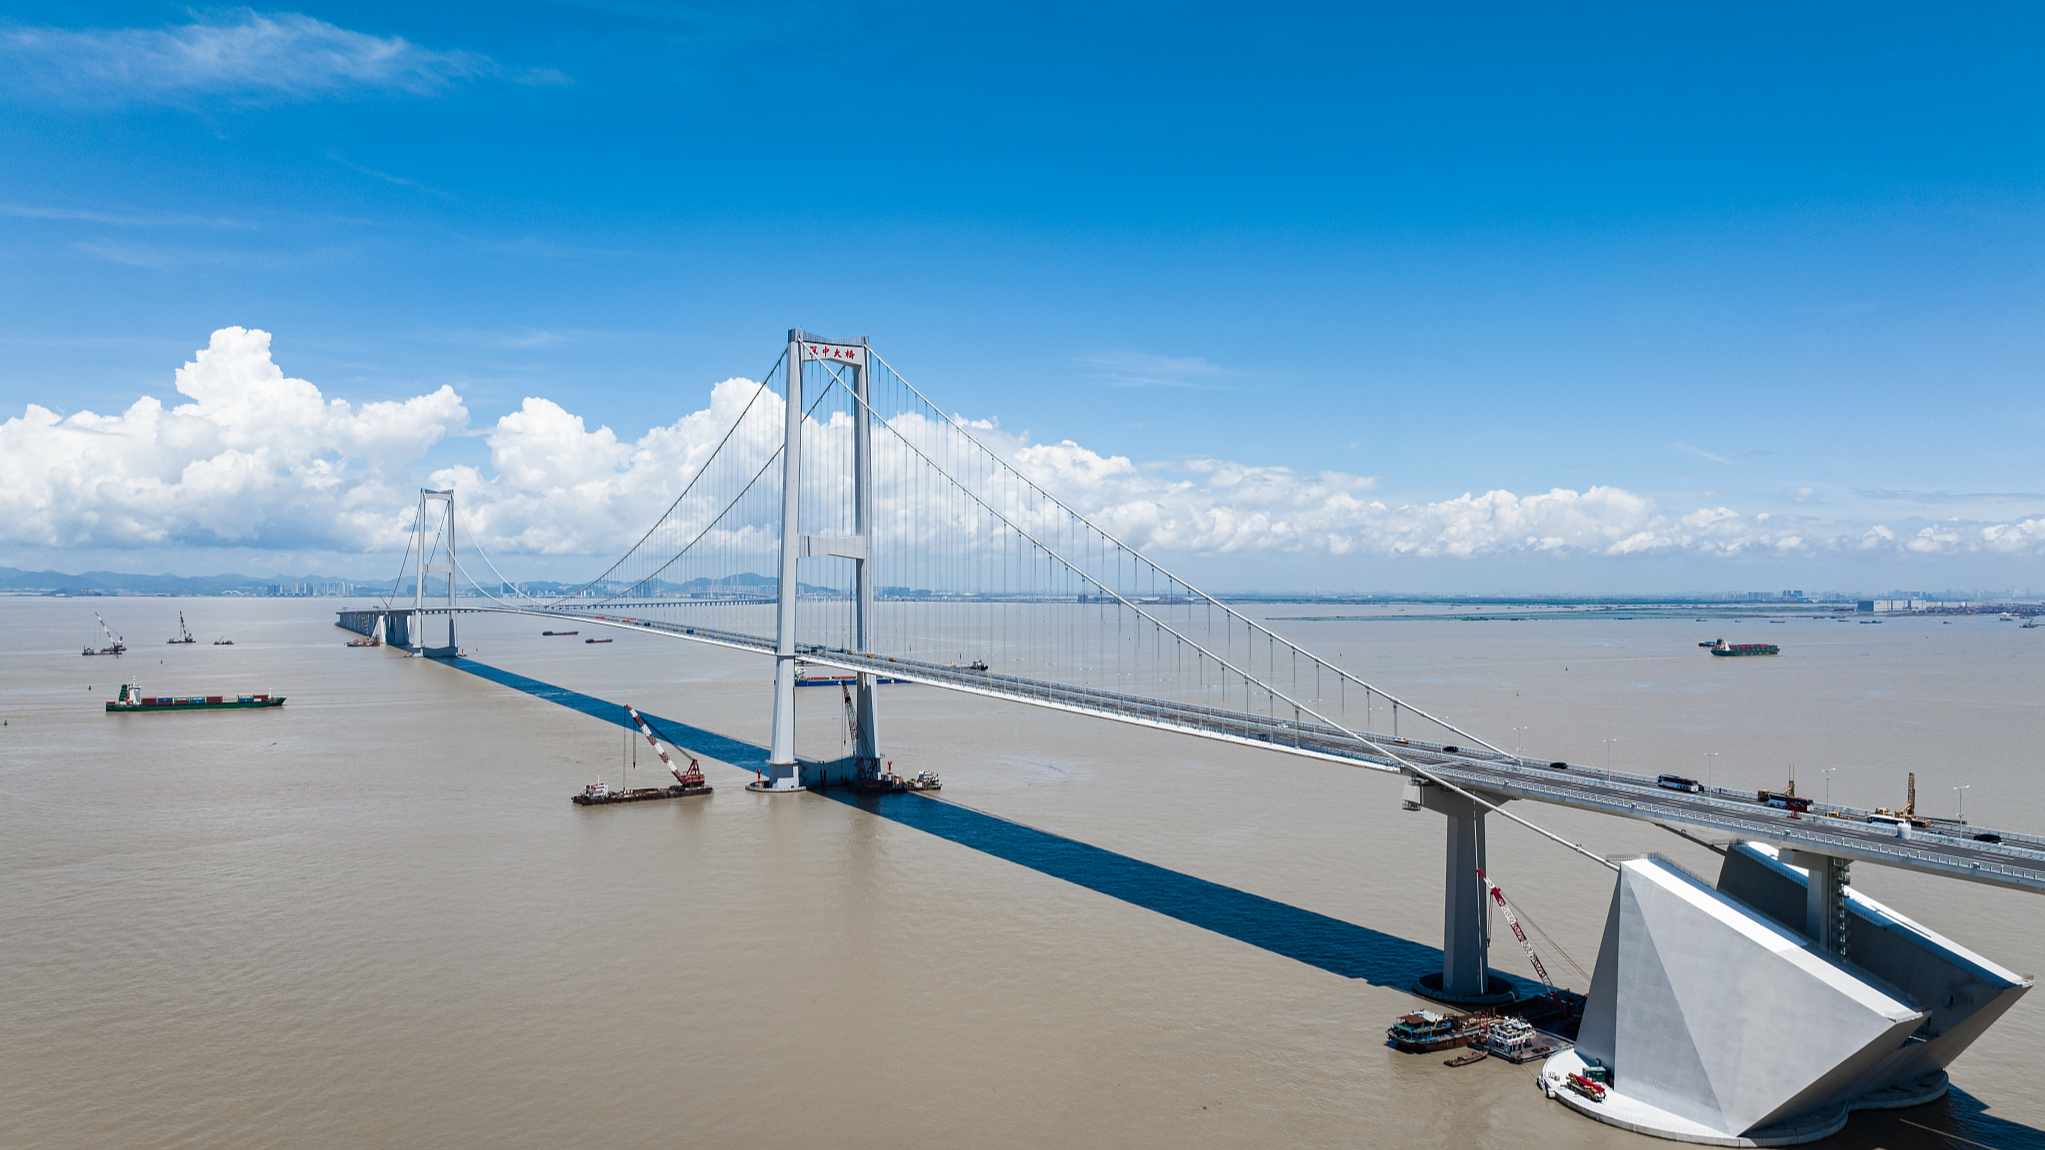 The Shenzhen-Zhongshan Bridge of the Shenzhen-Zhongshan Link in south China's Guangdong Province. /CFP
